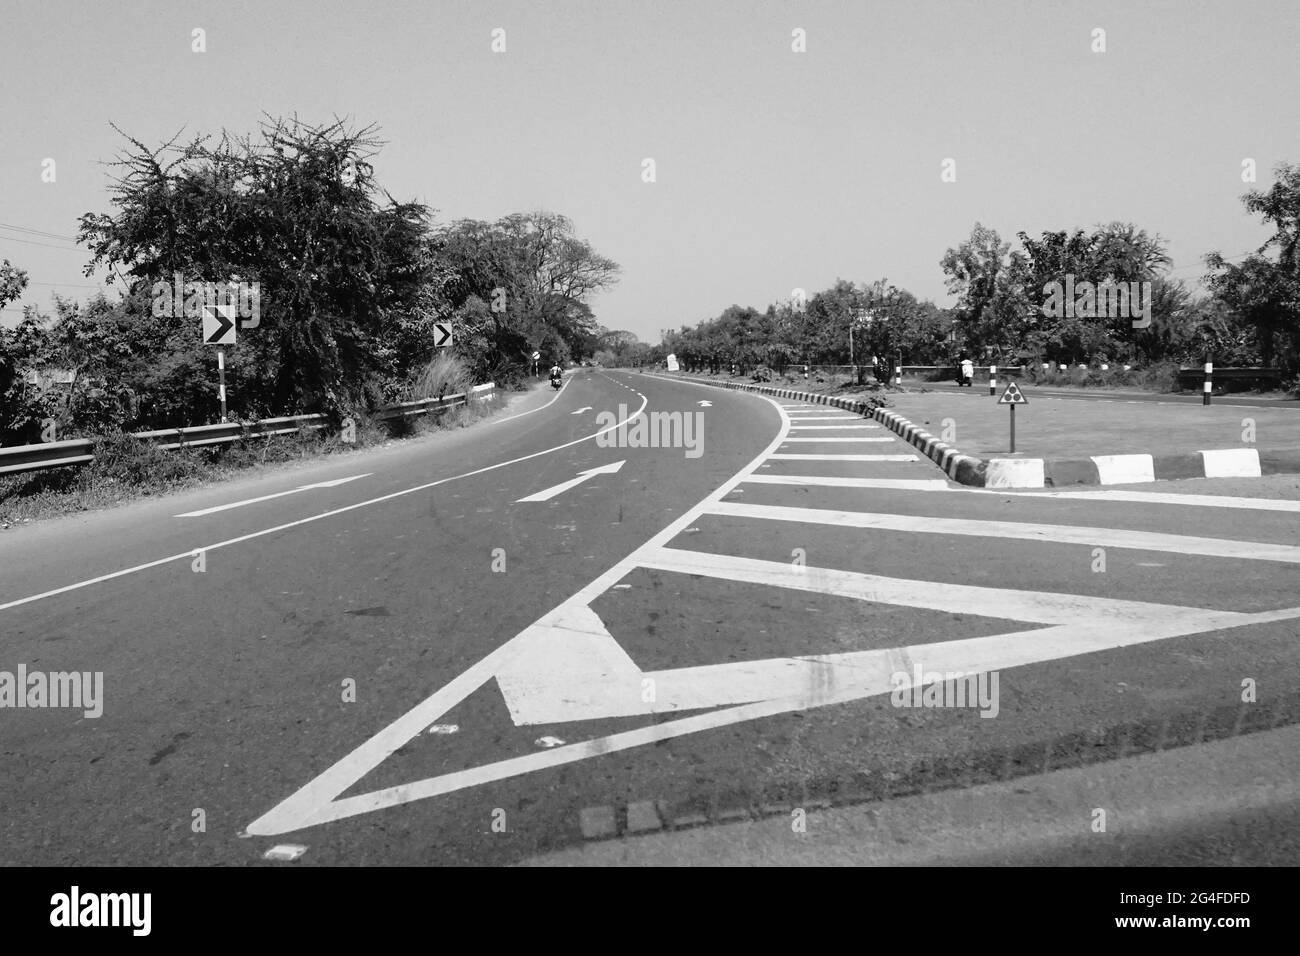 Les marques blanches sur l'autoroute indienne, image en noir et blanc prise en journée. Banque D'Images